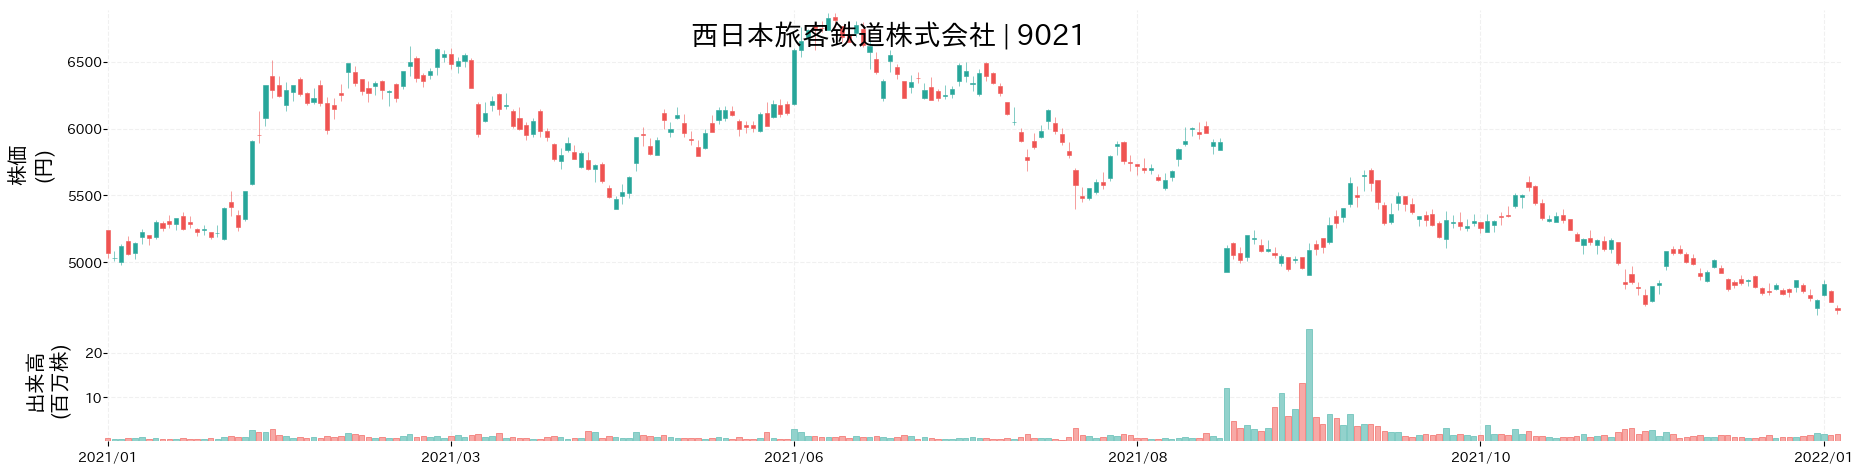 西日本旅客鉄道の株価推移(2021)